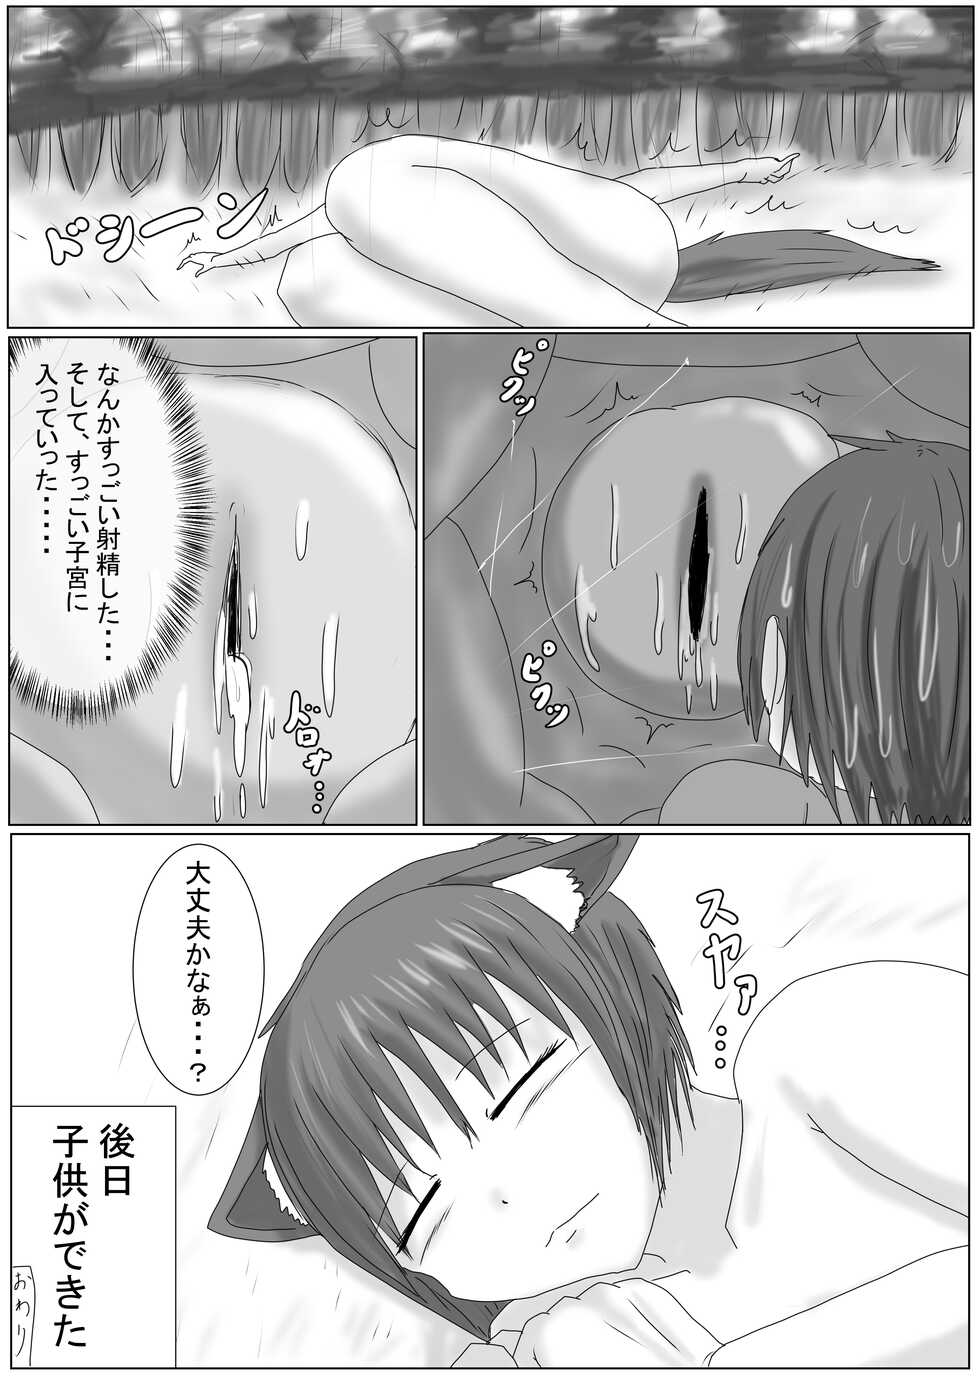 [アシダカ | Huntsman spider] Story liked by beastmen [Doodle cartoon] - Page 8